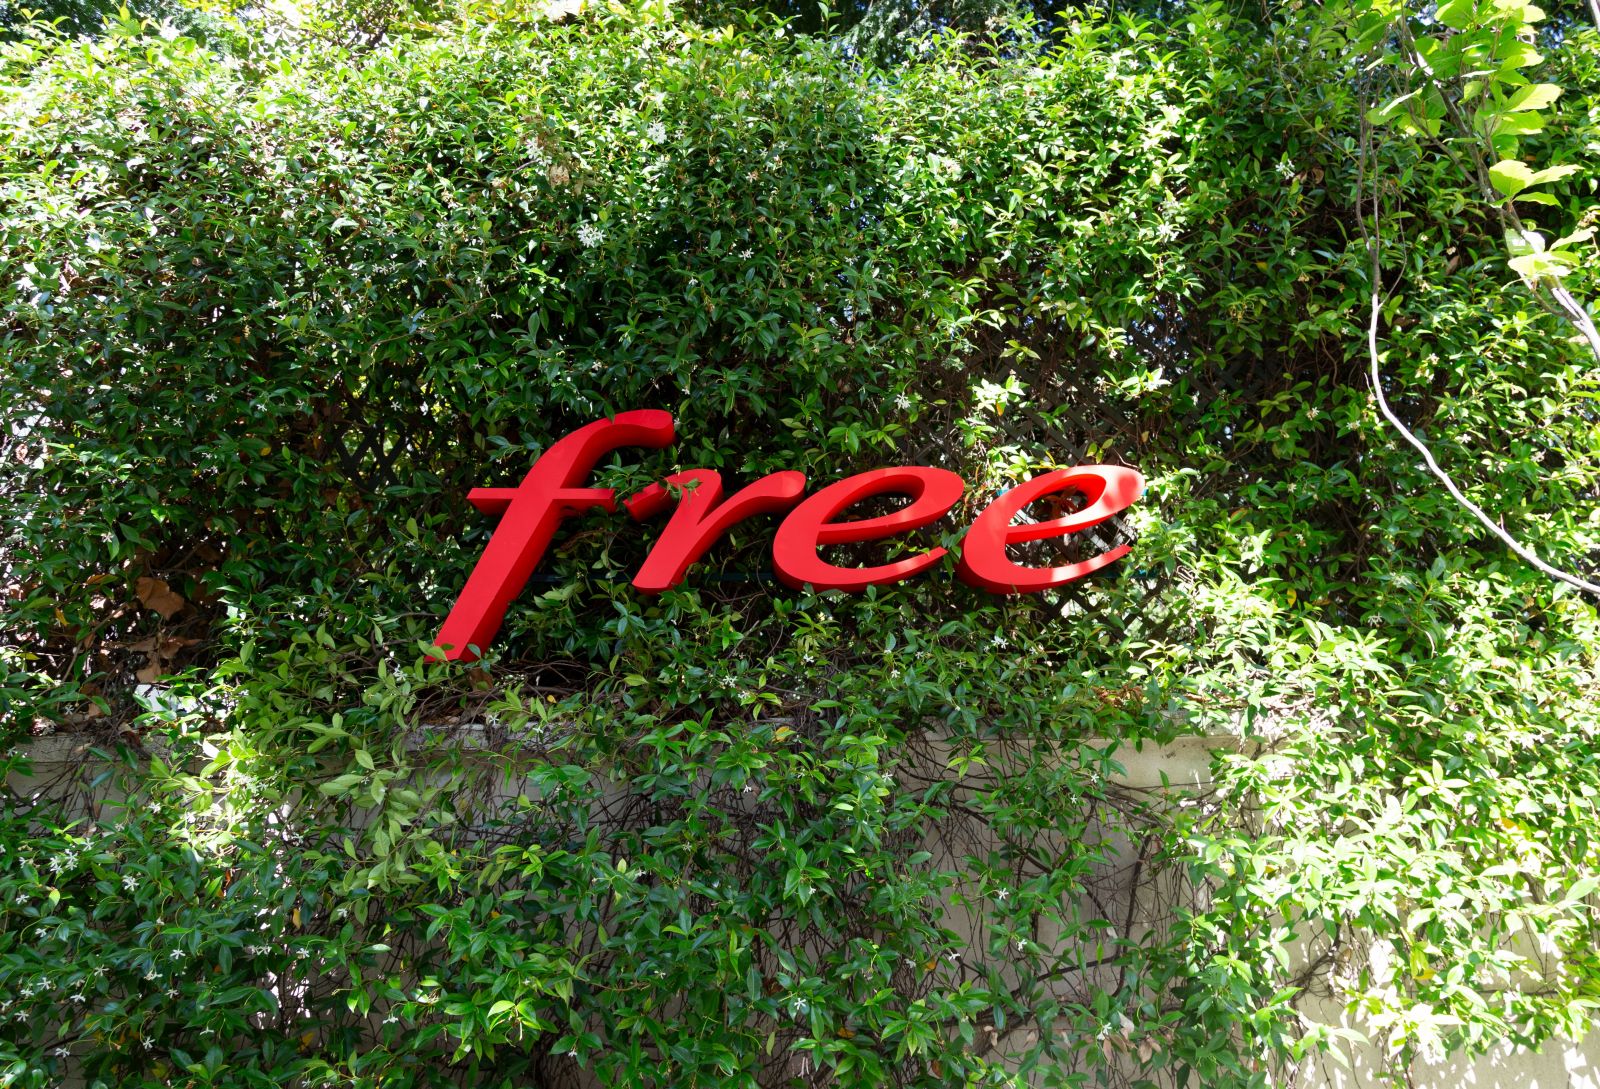 Les nouveautés de la semaine chez Free et Free Mobile : Oqee pour (presque) tous les abonnés Freebox, fin de plusieurs services...